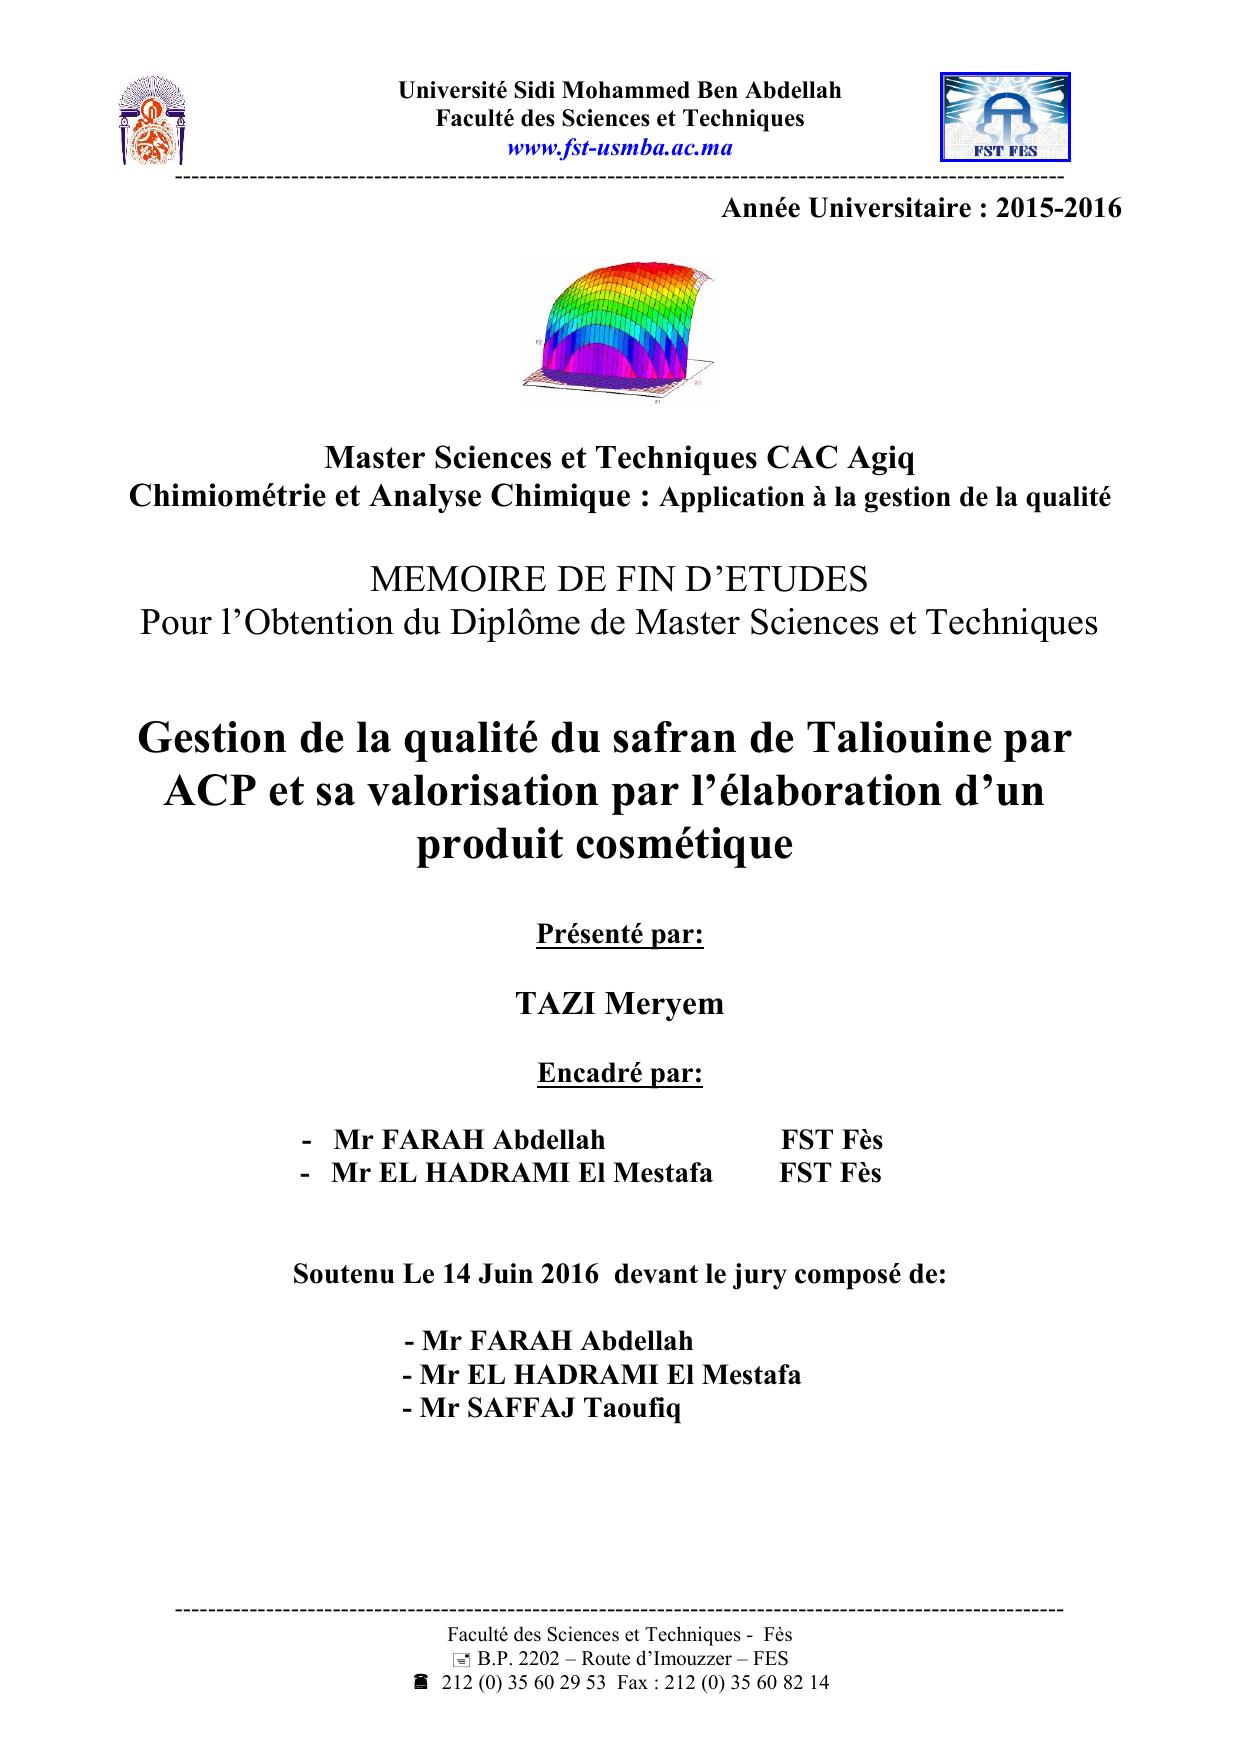 Gestion de la qualité du safran de Taliouine par ACP et sa valorisation par l’élaboration d’un produit cosmétique